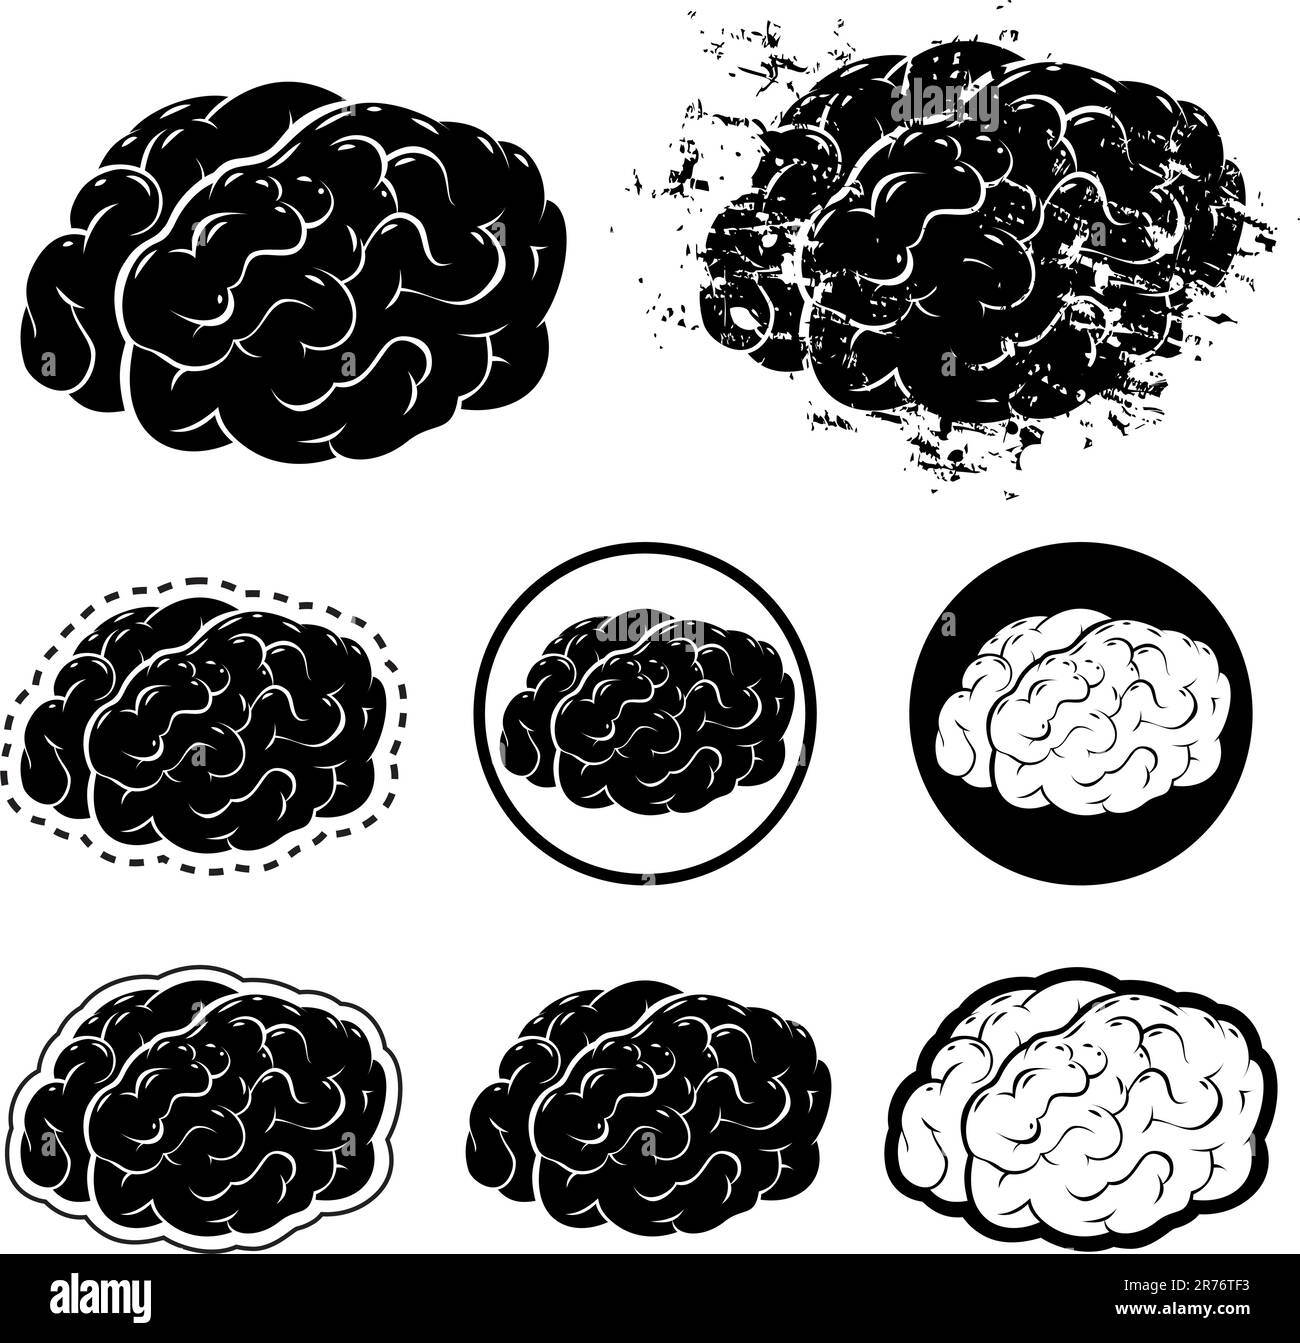 Objets d'art vectoriel dans EPS version 8. Plusieurs illustrations vectorielles stylisées de cerveaux, y compris un style grunge. Représentations inc.... Illustration de Vecteur